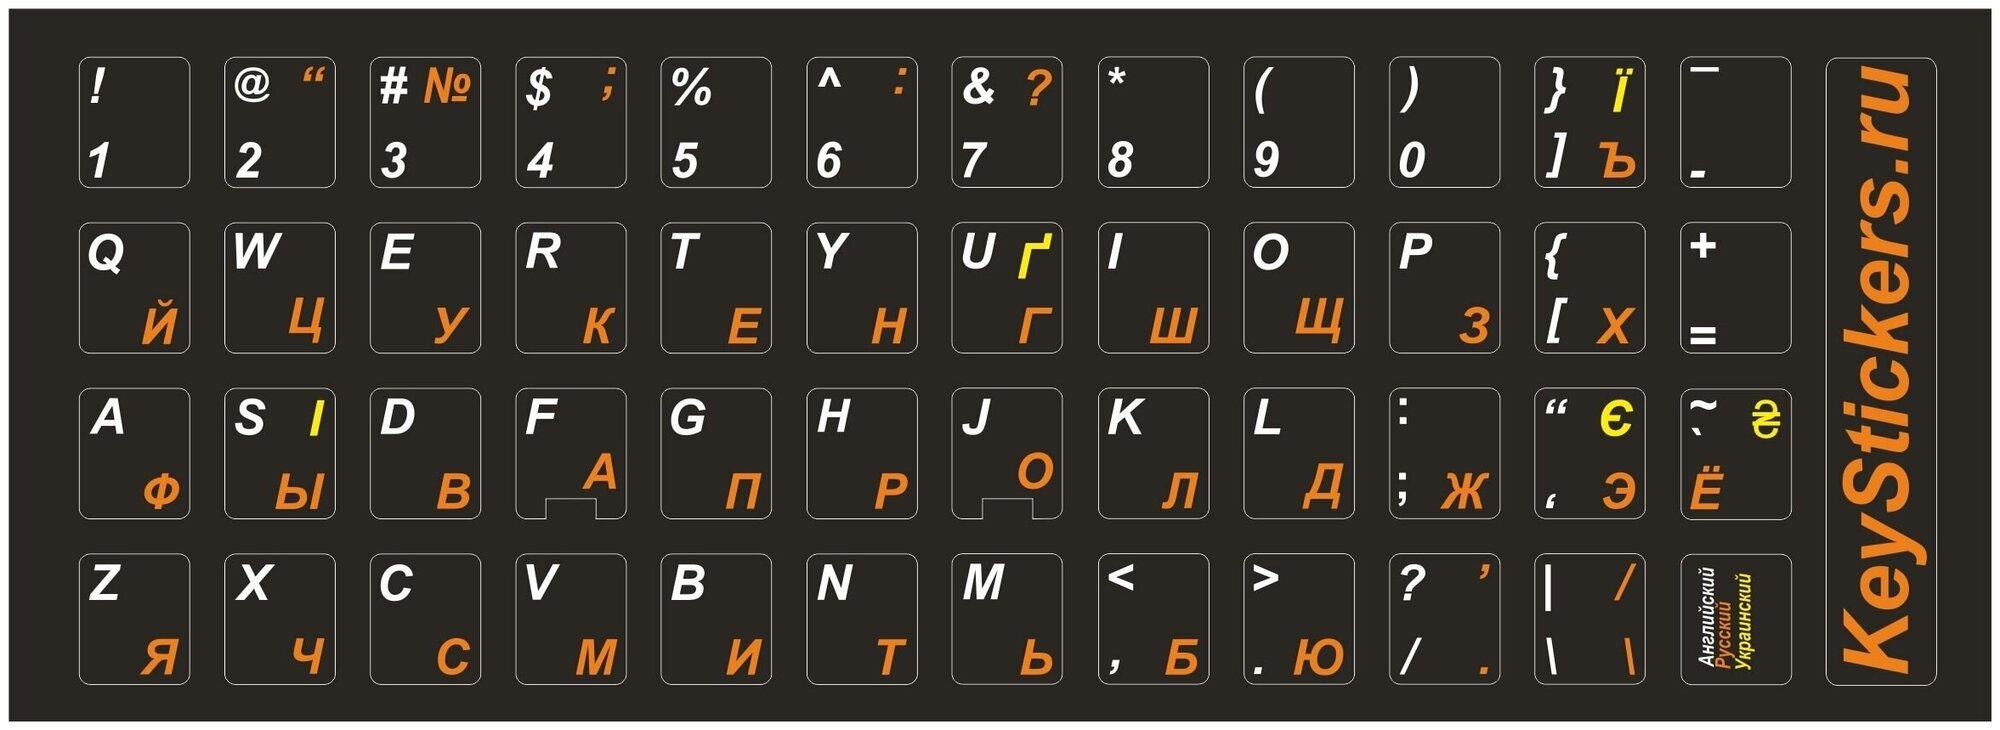 Украинские, английские, русские буквы на клавиатуру, наклейки букв 11x13 мм.